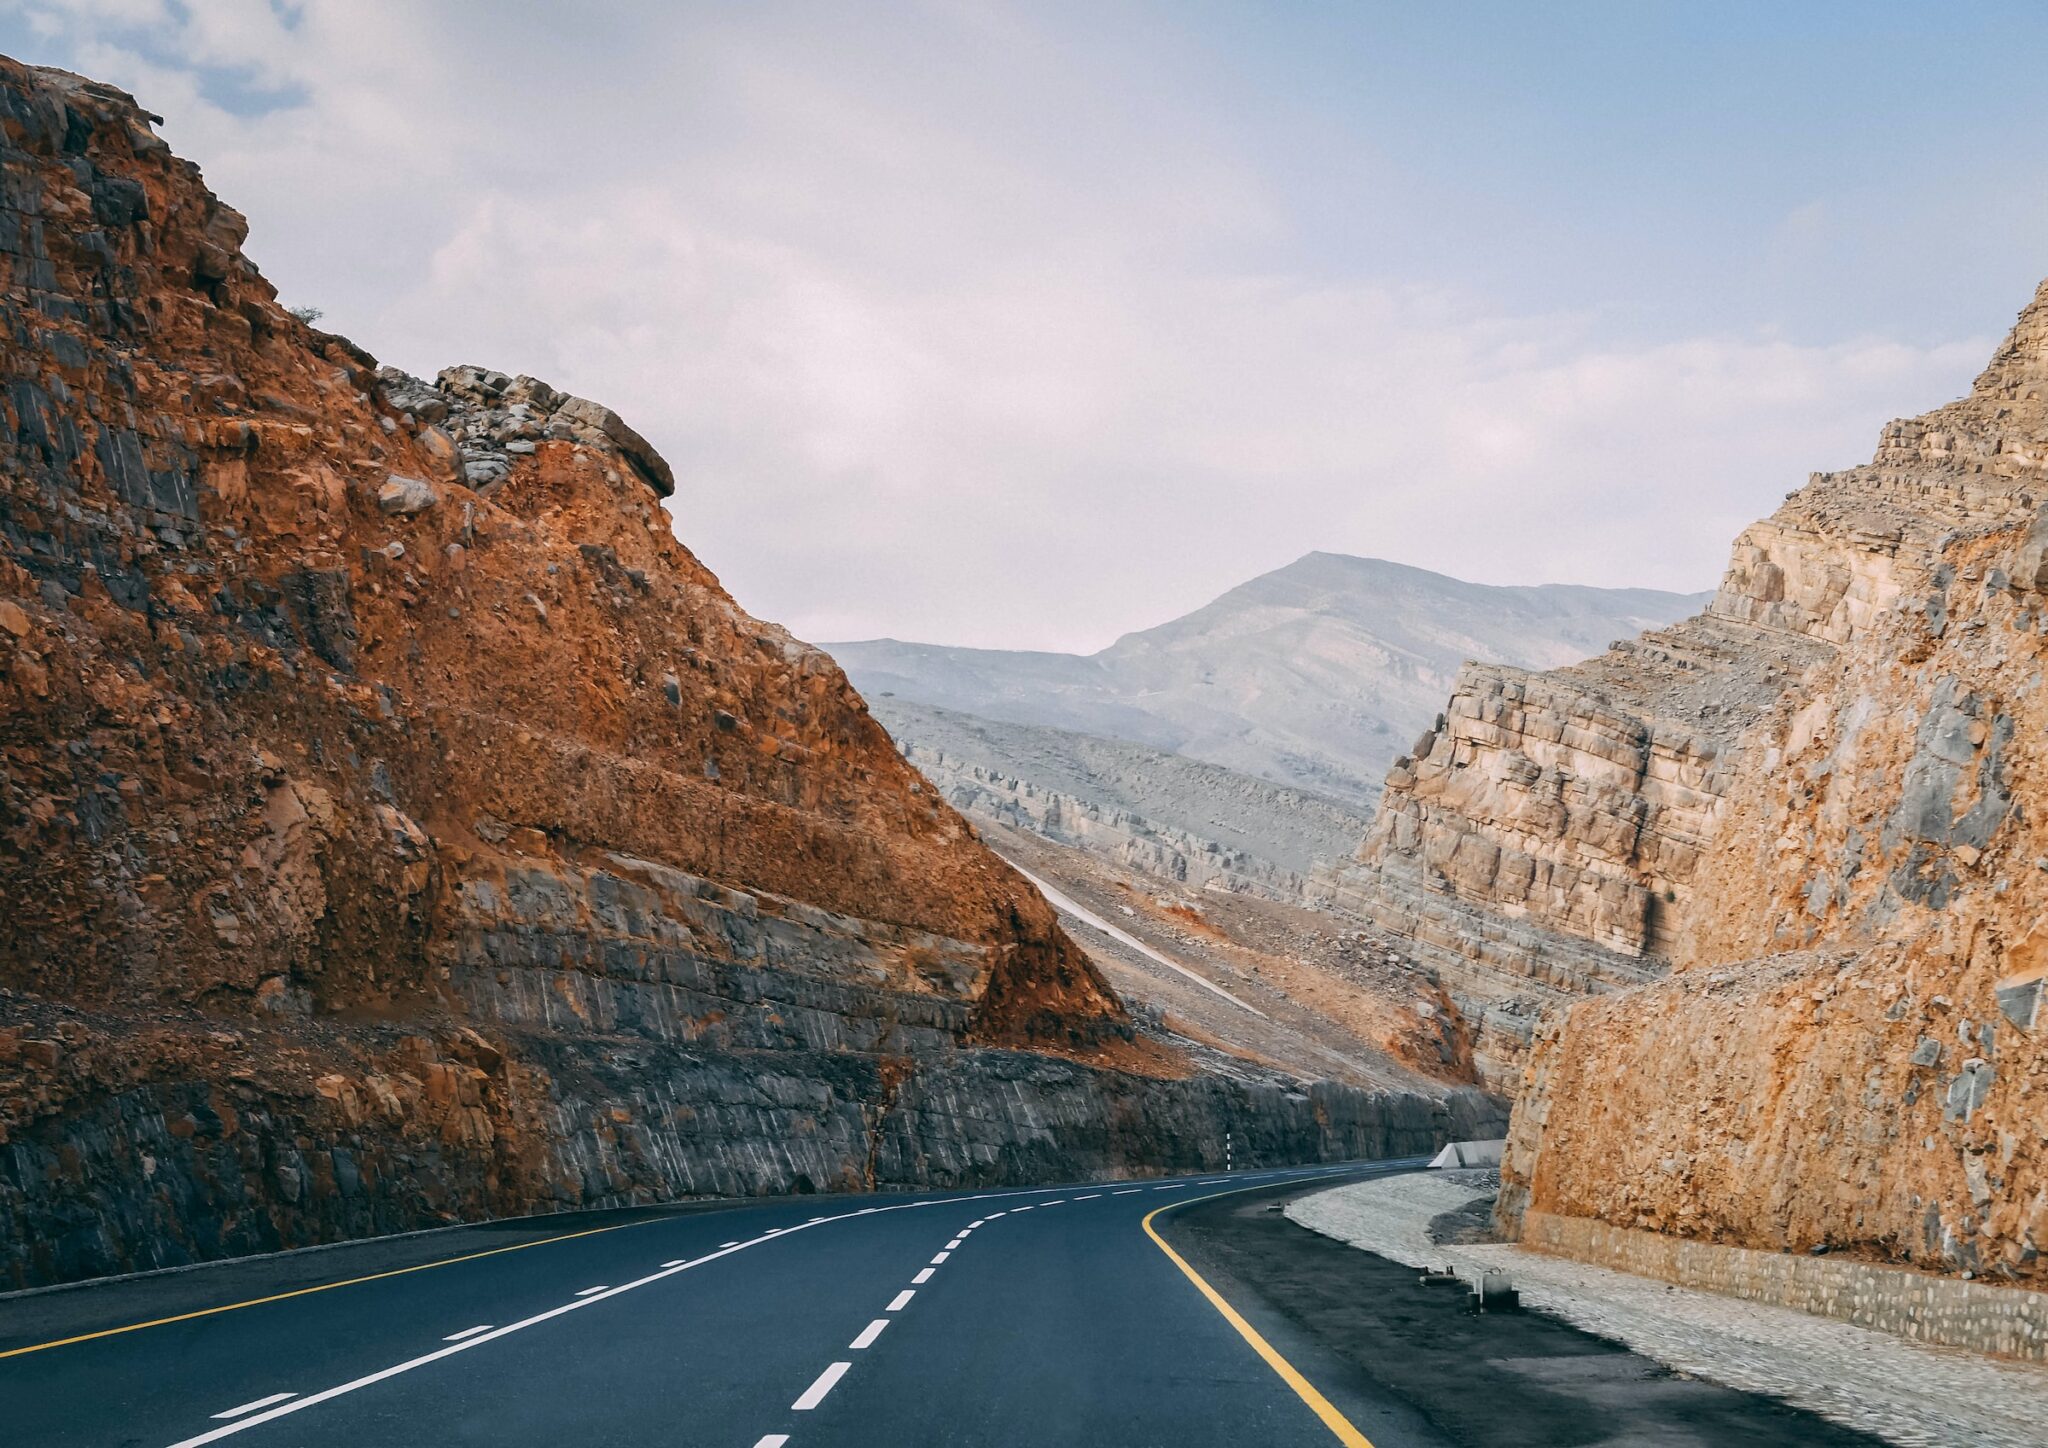 Roadtrip door Oman